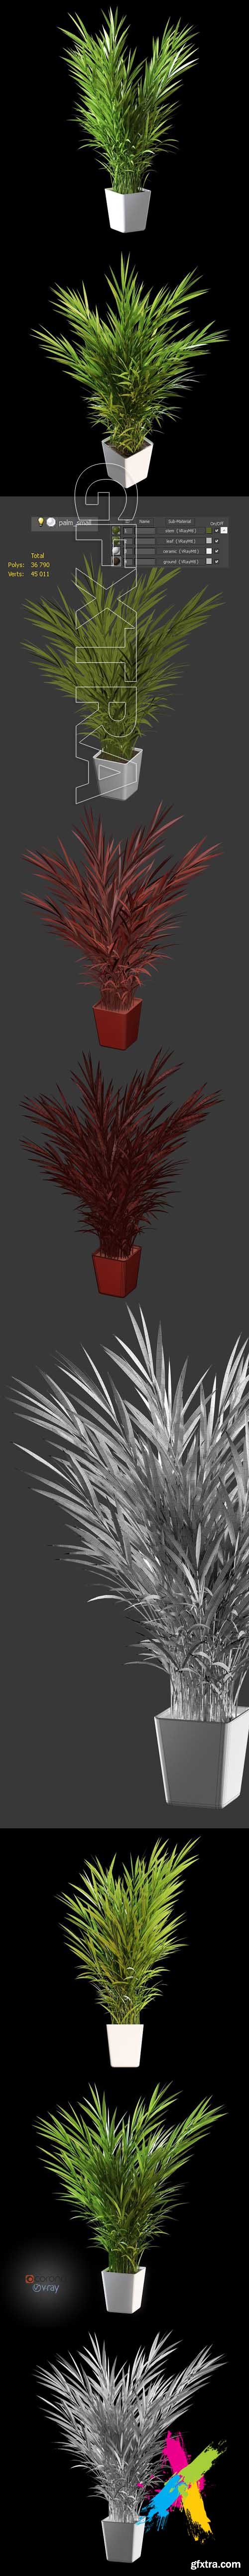 Palm tree in pot 3D model